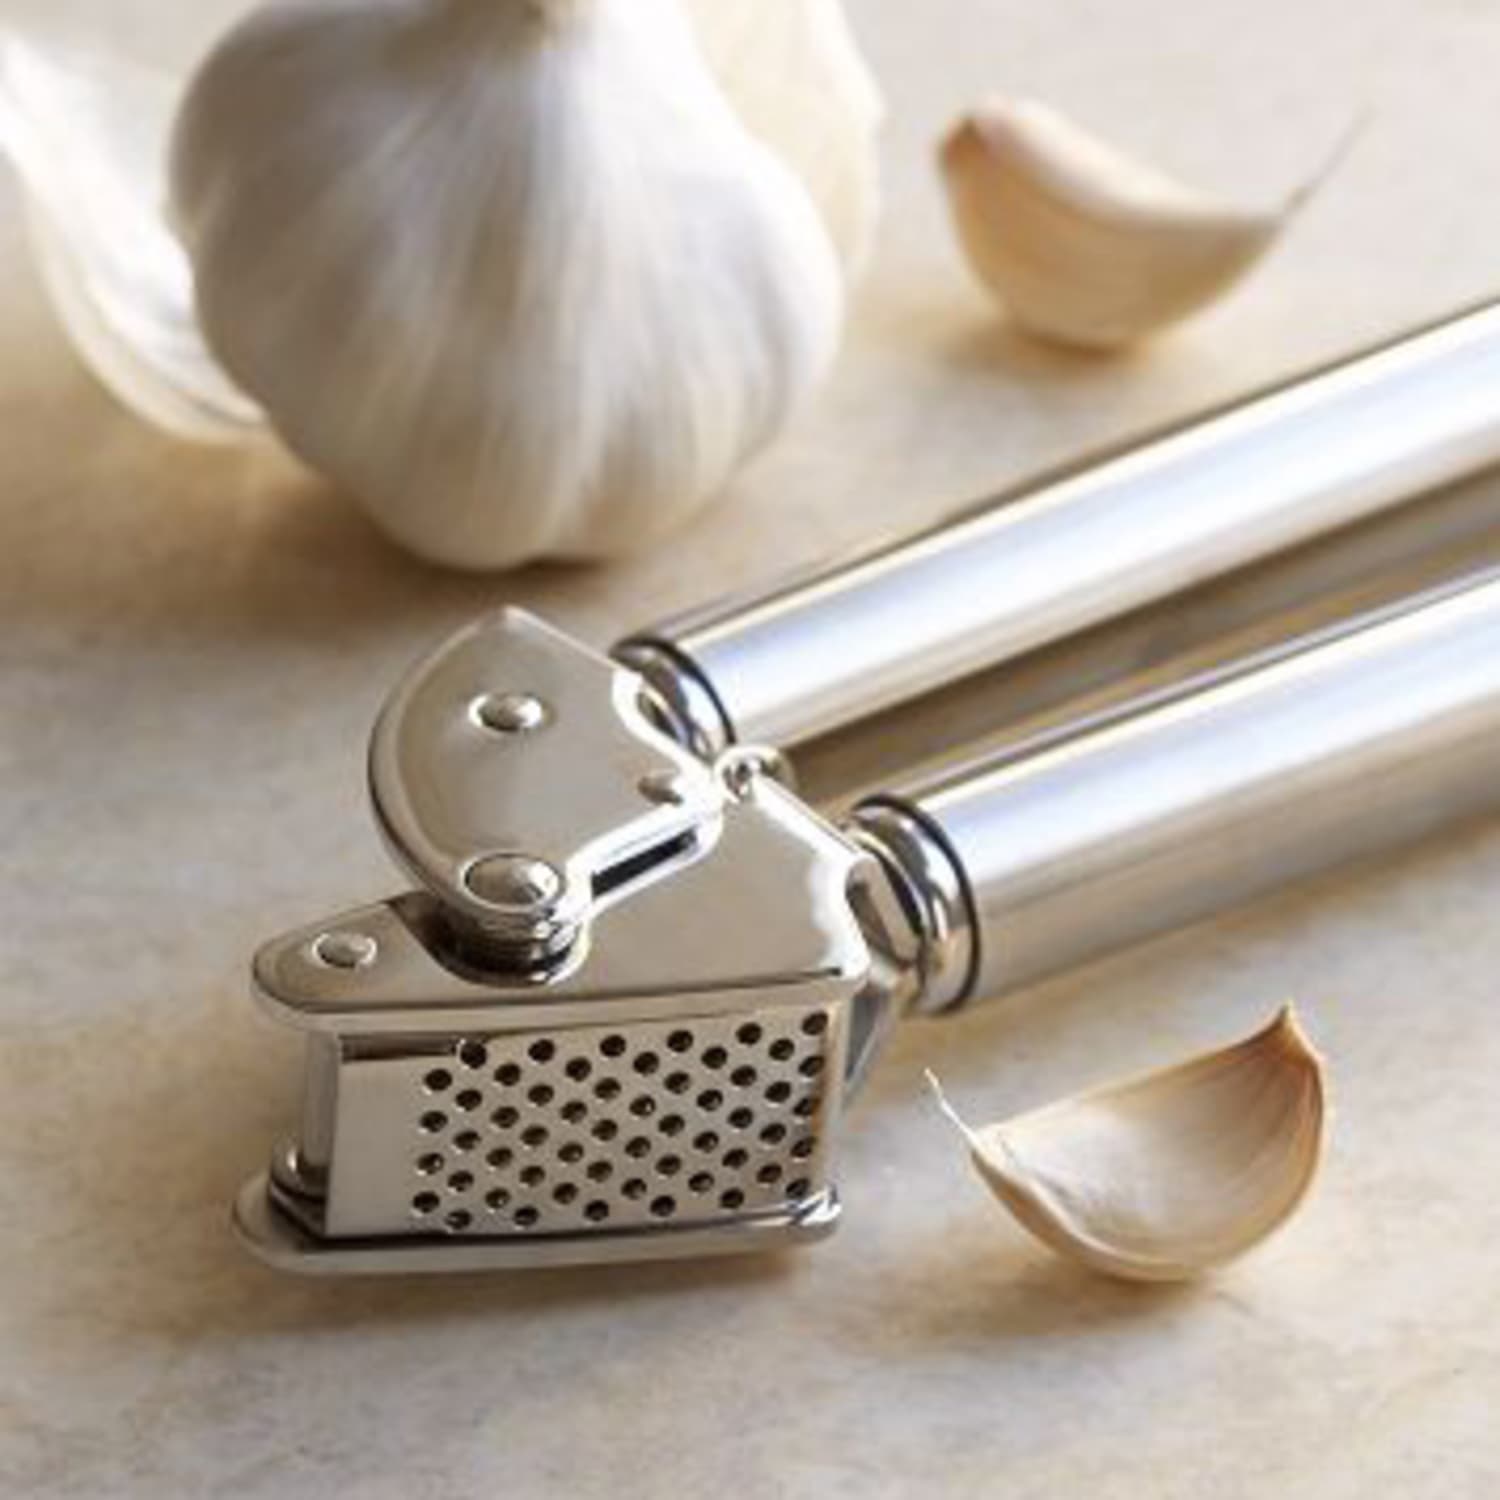 Is 'Garlic Master' worth your money?